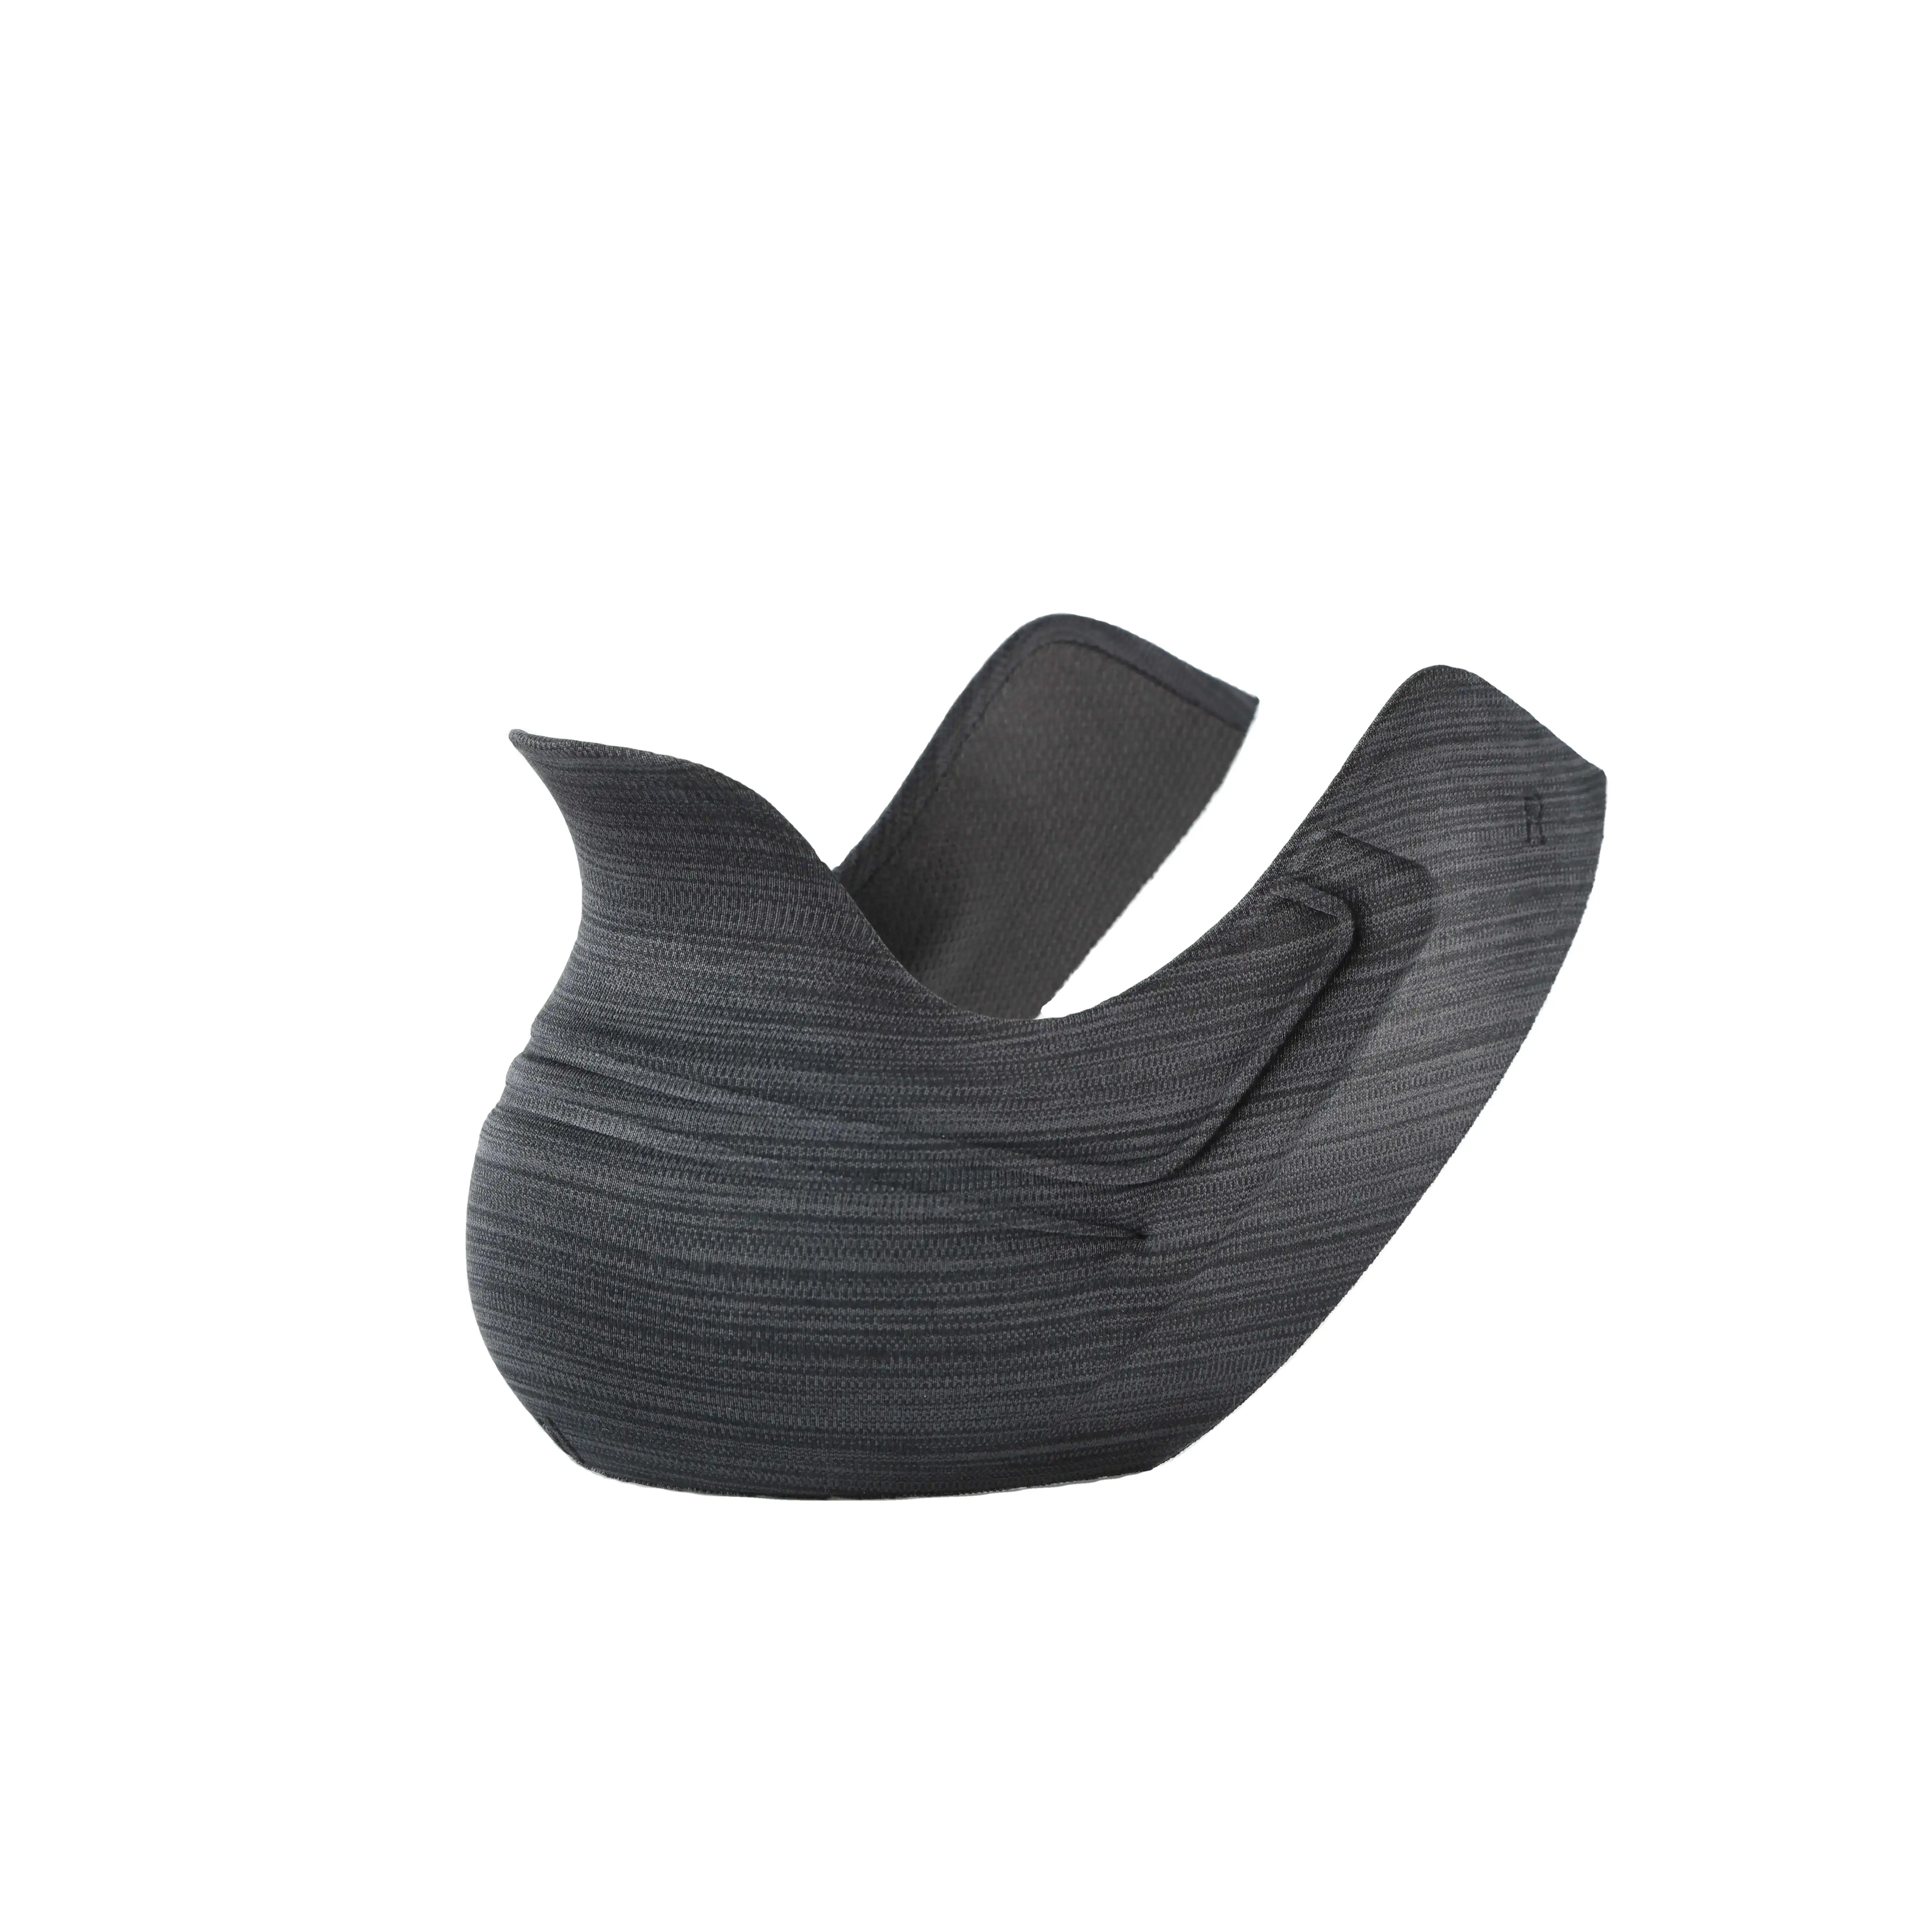 Fábrica Compra a granel disponível para contadores de calcanhar moldados 3D projetados para calçados esportivos masculinos